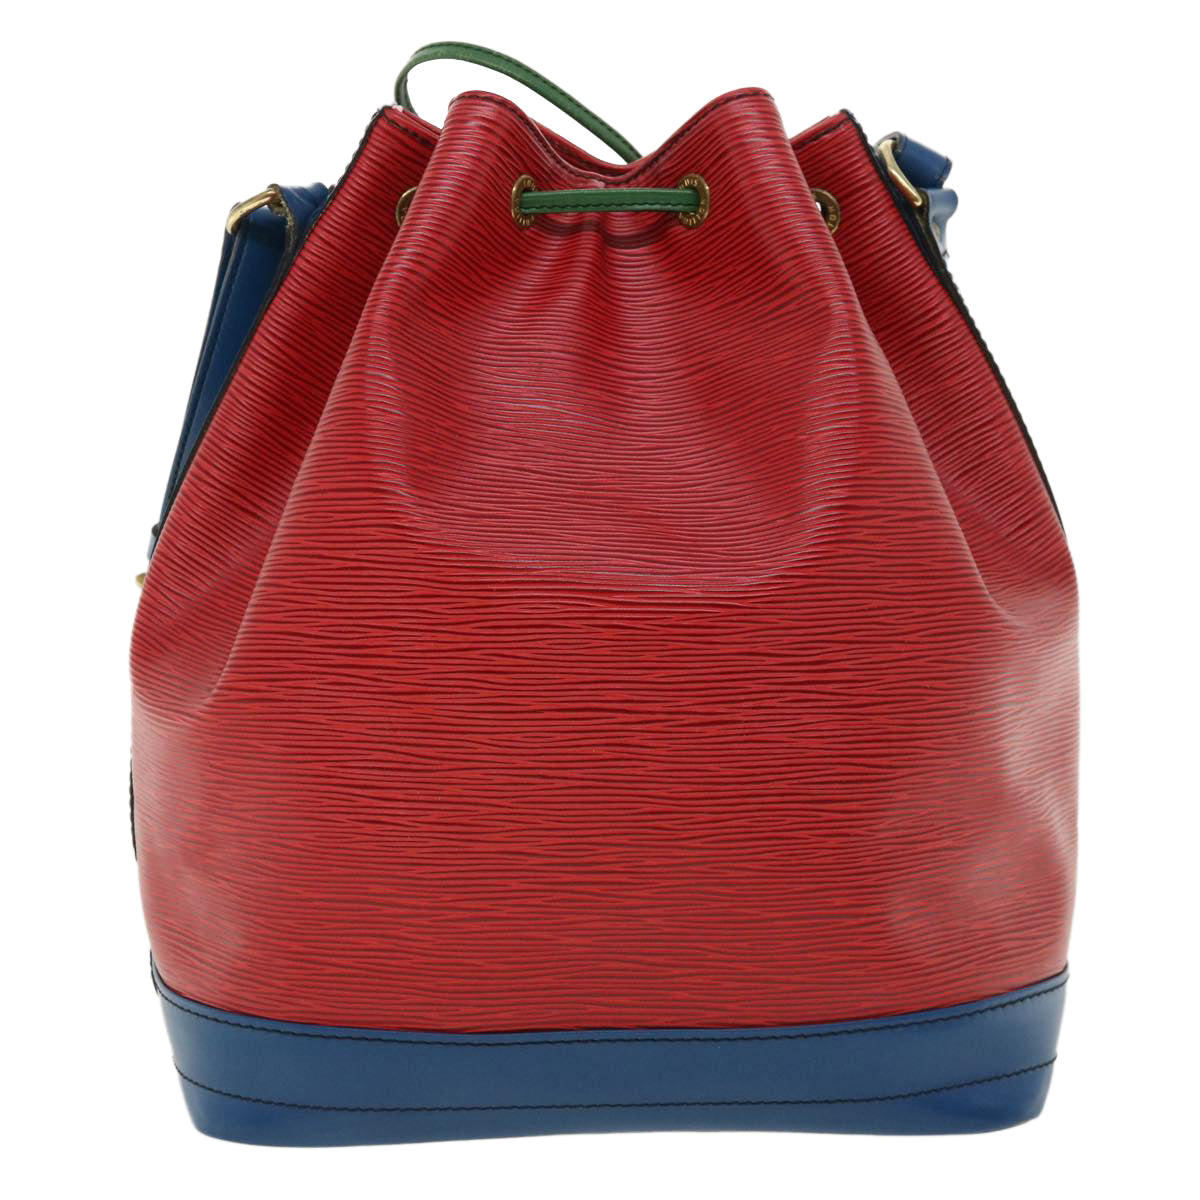 LOUIS VUITTON Epi Toriko color Noe Shoulder Bag Red Blue Green M44084 Auth 34330 - 0